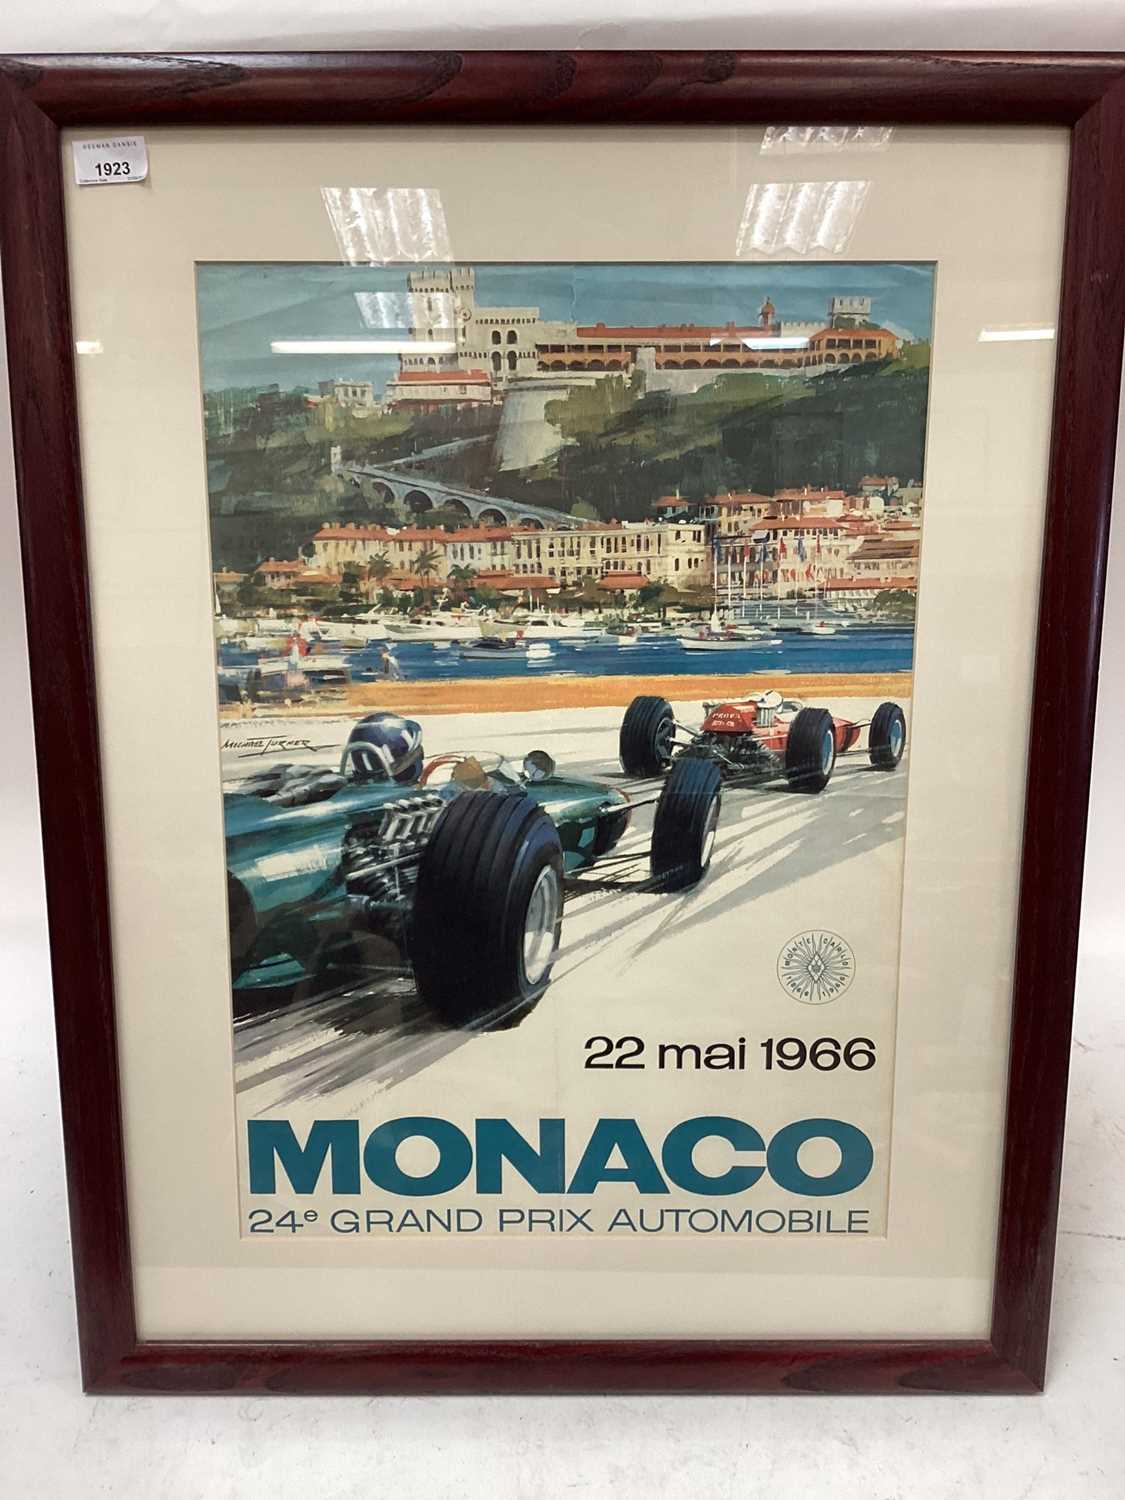 Lot 1923 - Original 1966 Monaco Formula One Grand Prix poster, 24e Mai 1966, 24e Grand Prix Automobile, mounted in glazed frame, 76 x 59cm overall.